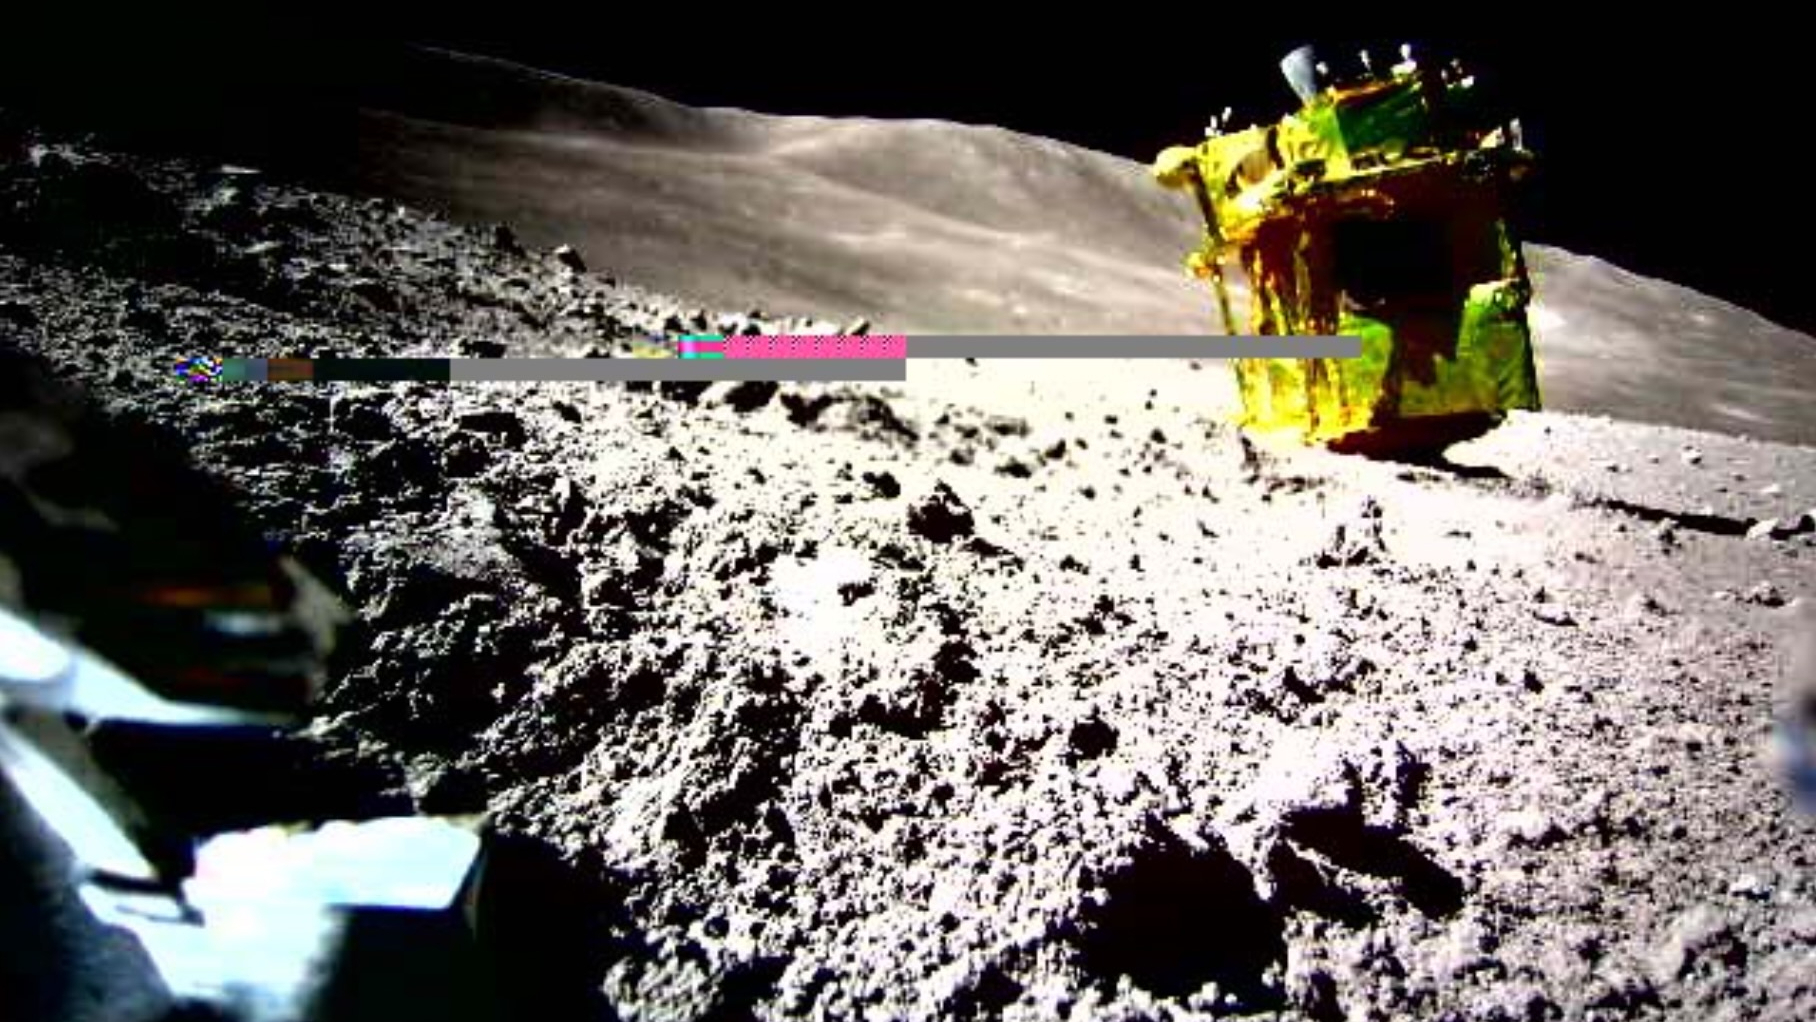 Japan’s SLIM moon lander photographed on the lunar surface (image)